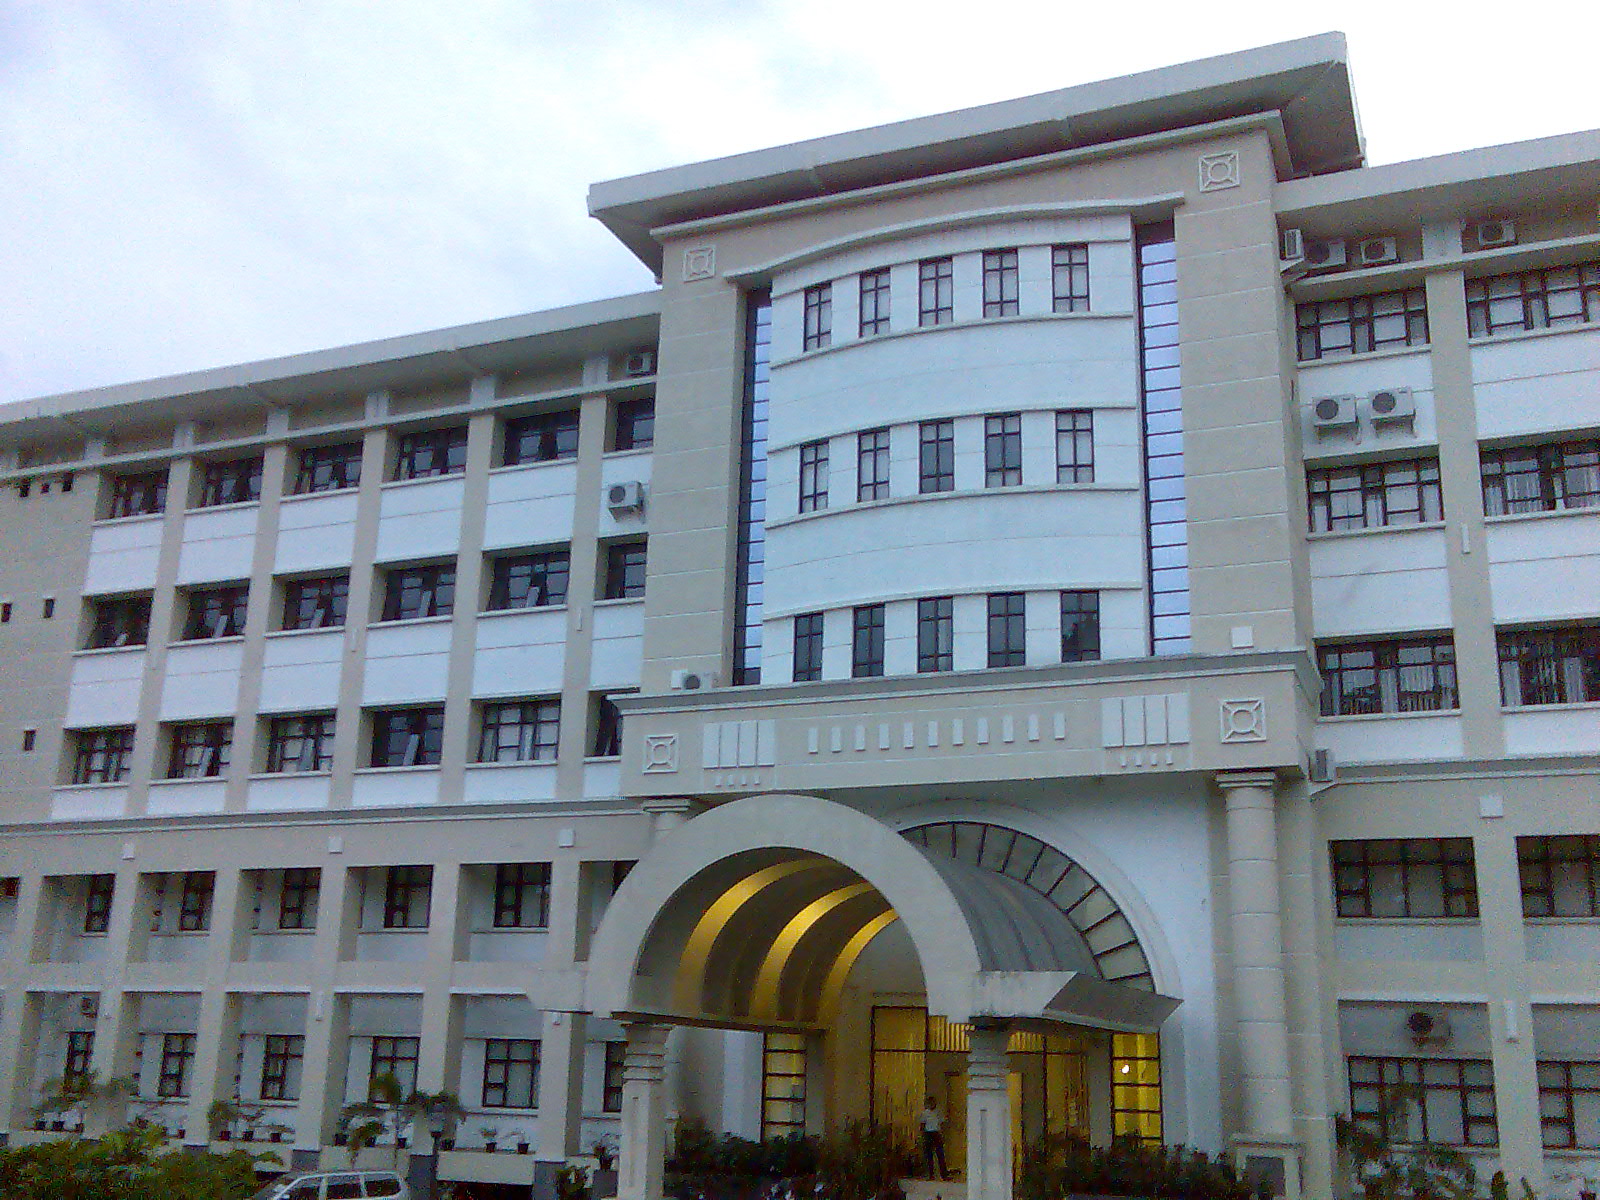 Universitas yang dahulunya bernama IKIP Institut Keguruan dan Ilmu Pendidikan ini sejak awal tahun 2000